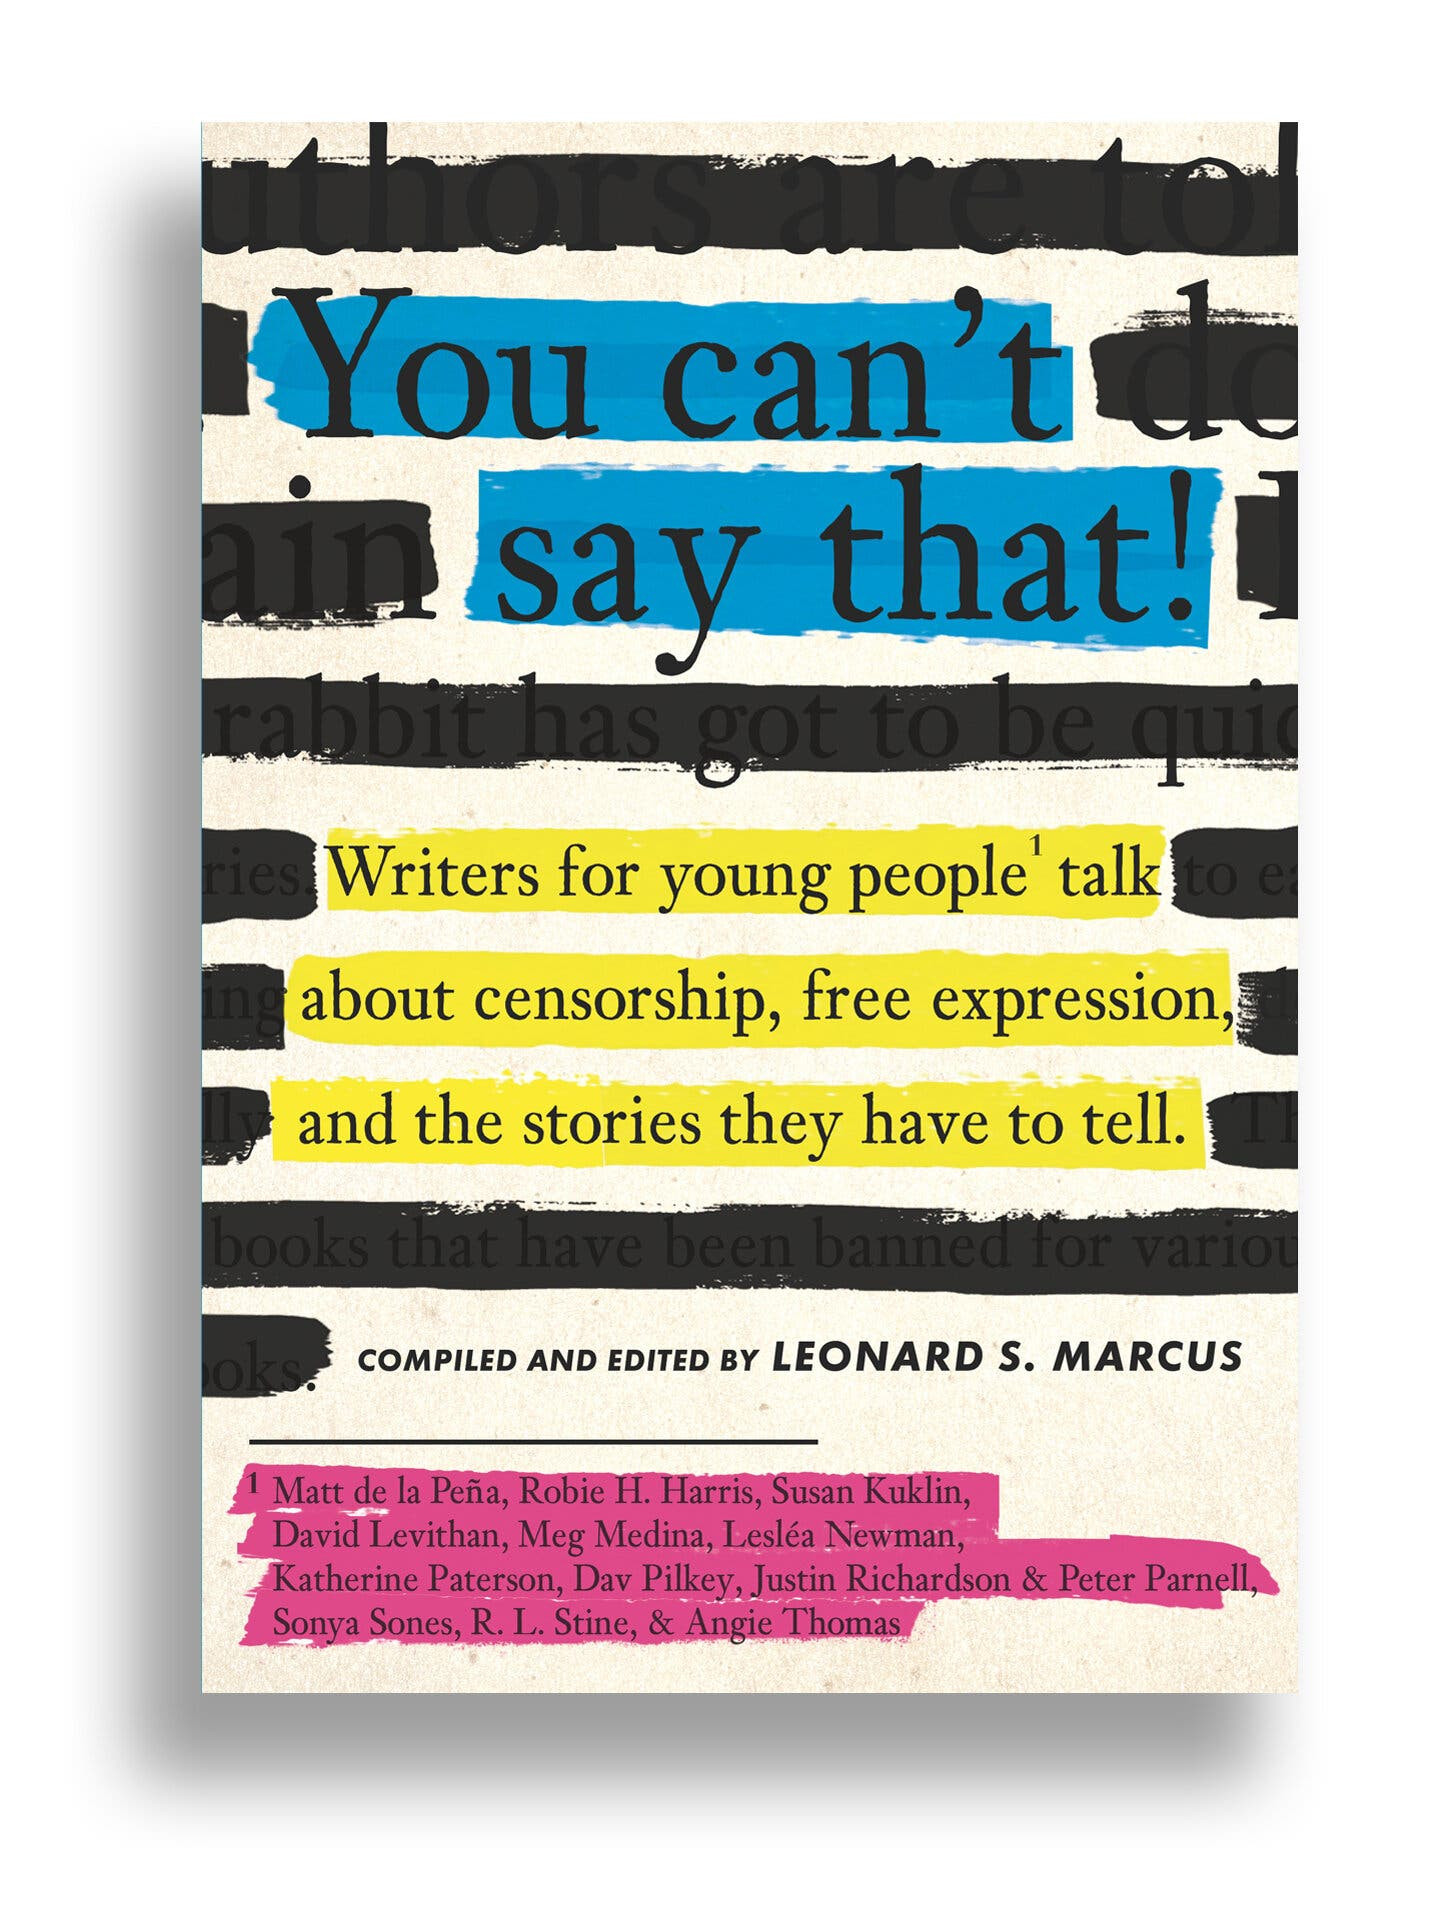 Portada del libro 'You can't say that' sobre las formas de censura recopilado por Leonard S. Marcus / CANDLEWICK